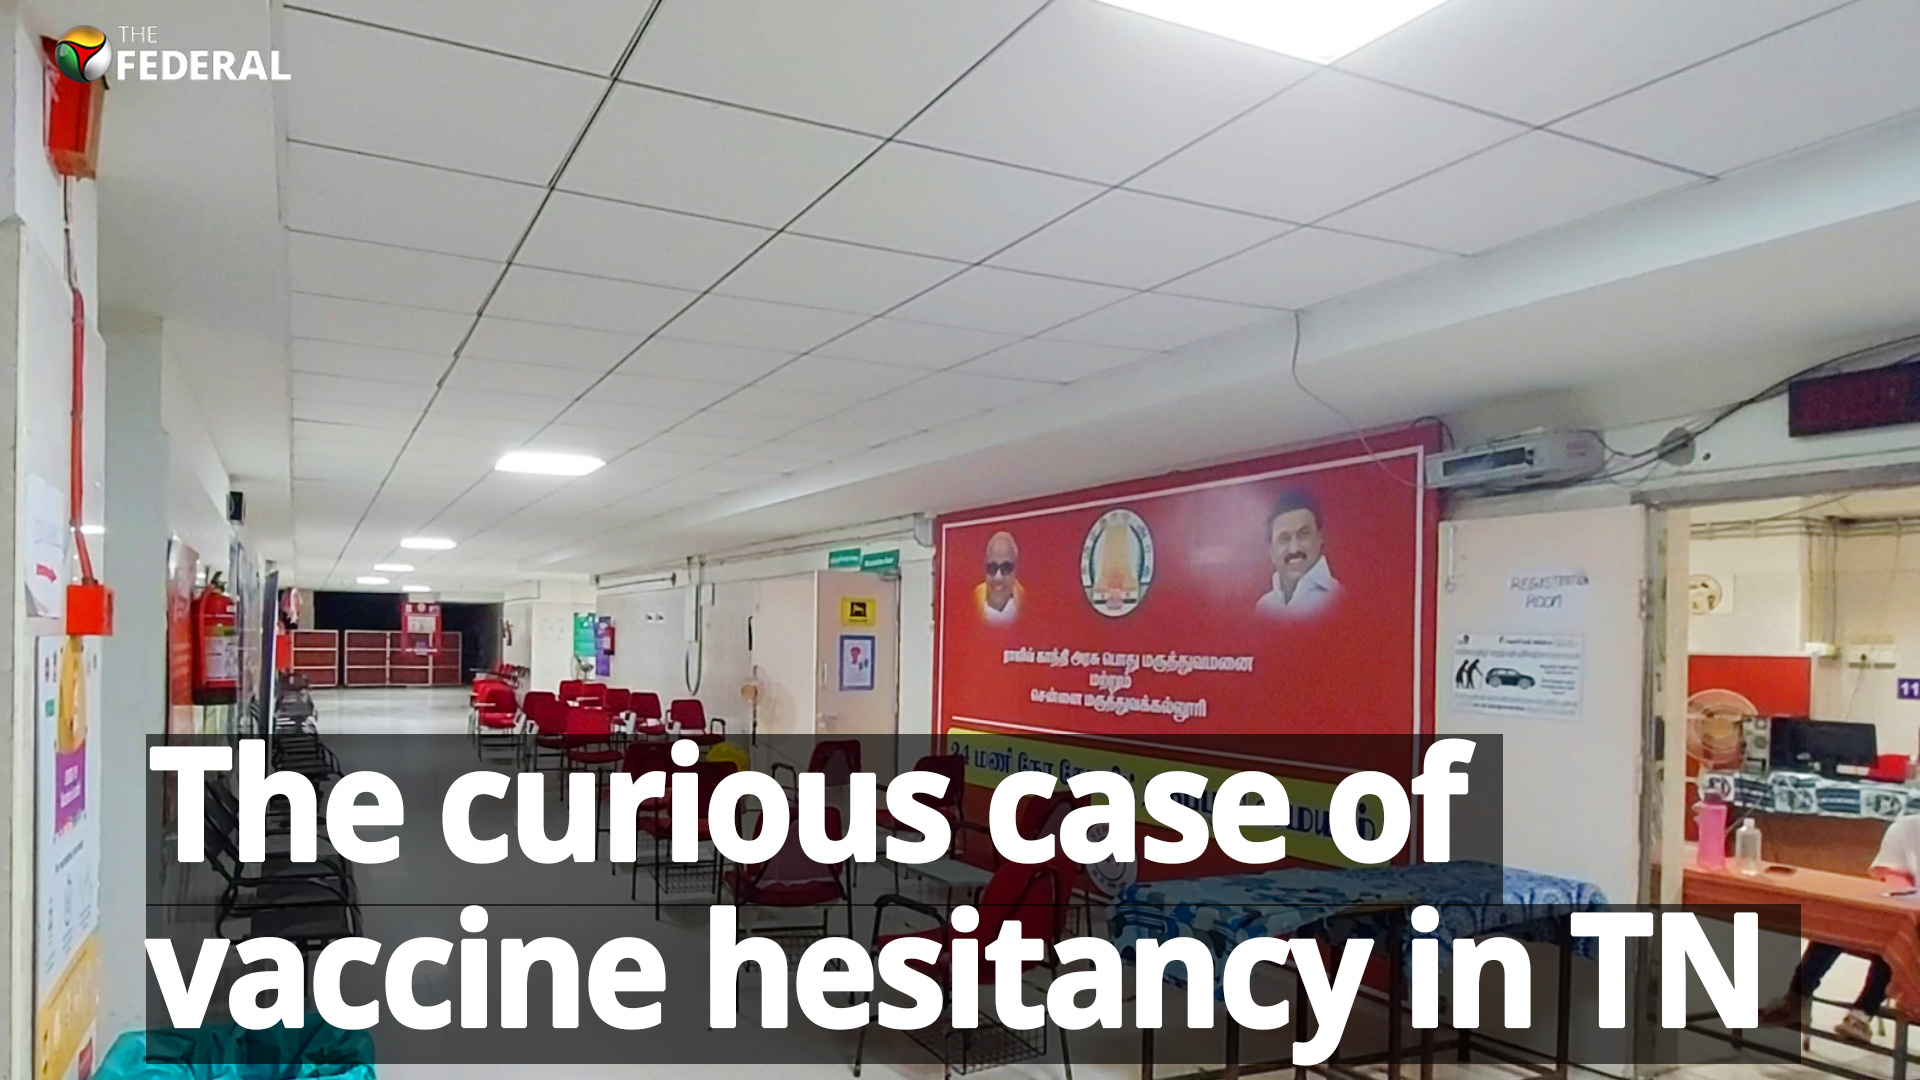 Why is Tamil Nadu witnessing high vaccine hesitancy?